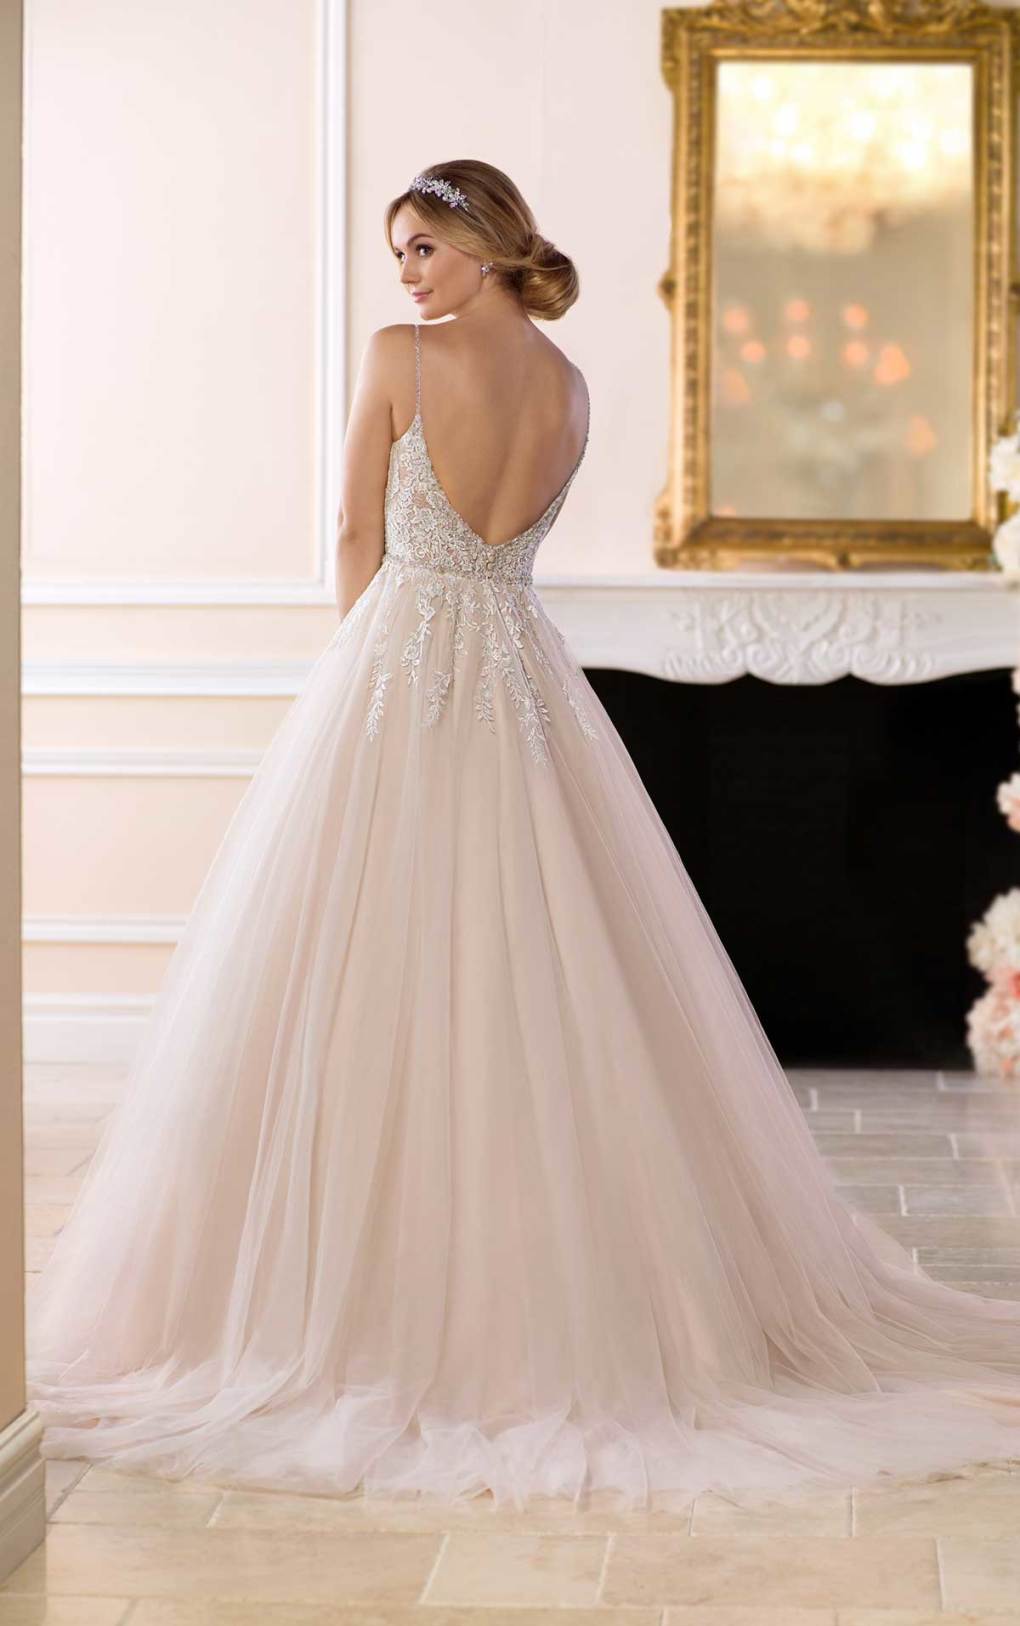 Erleben Sie in diesem Kleid von Stella York einen totalen Prinzessinnen-Moment!